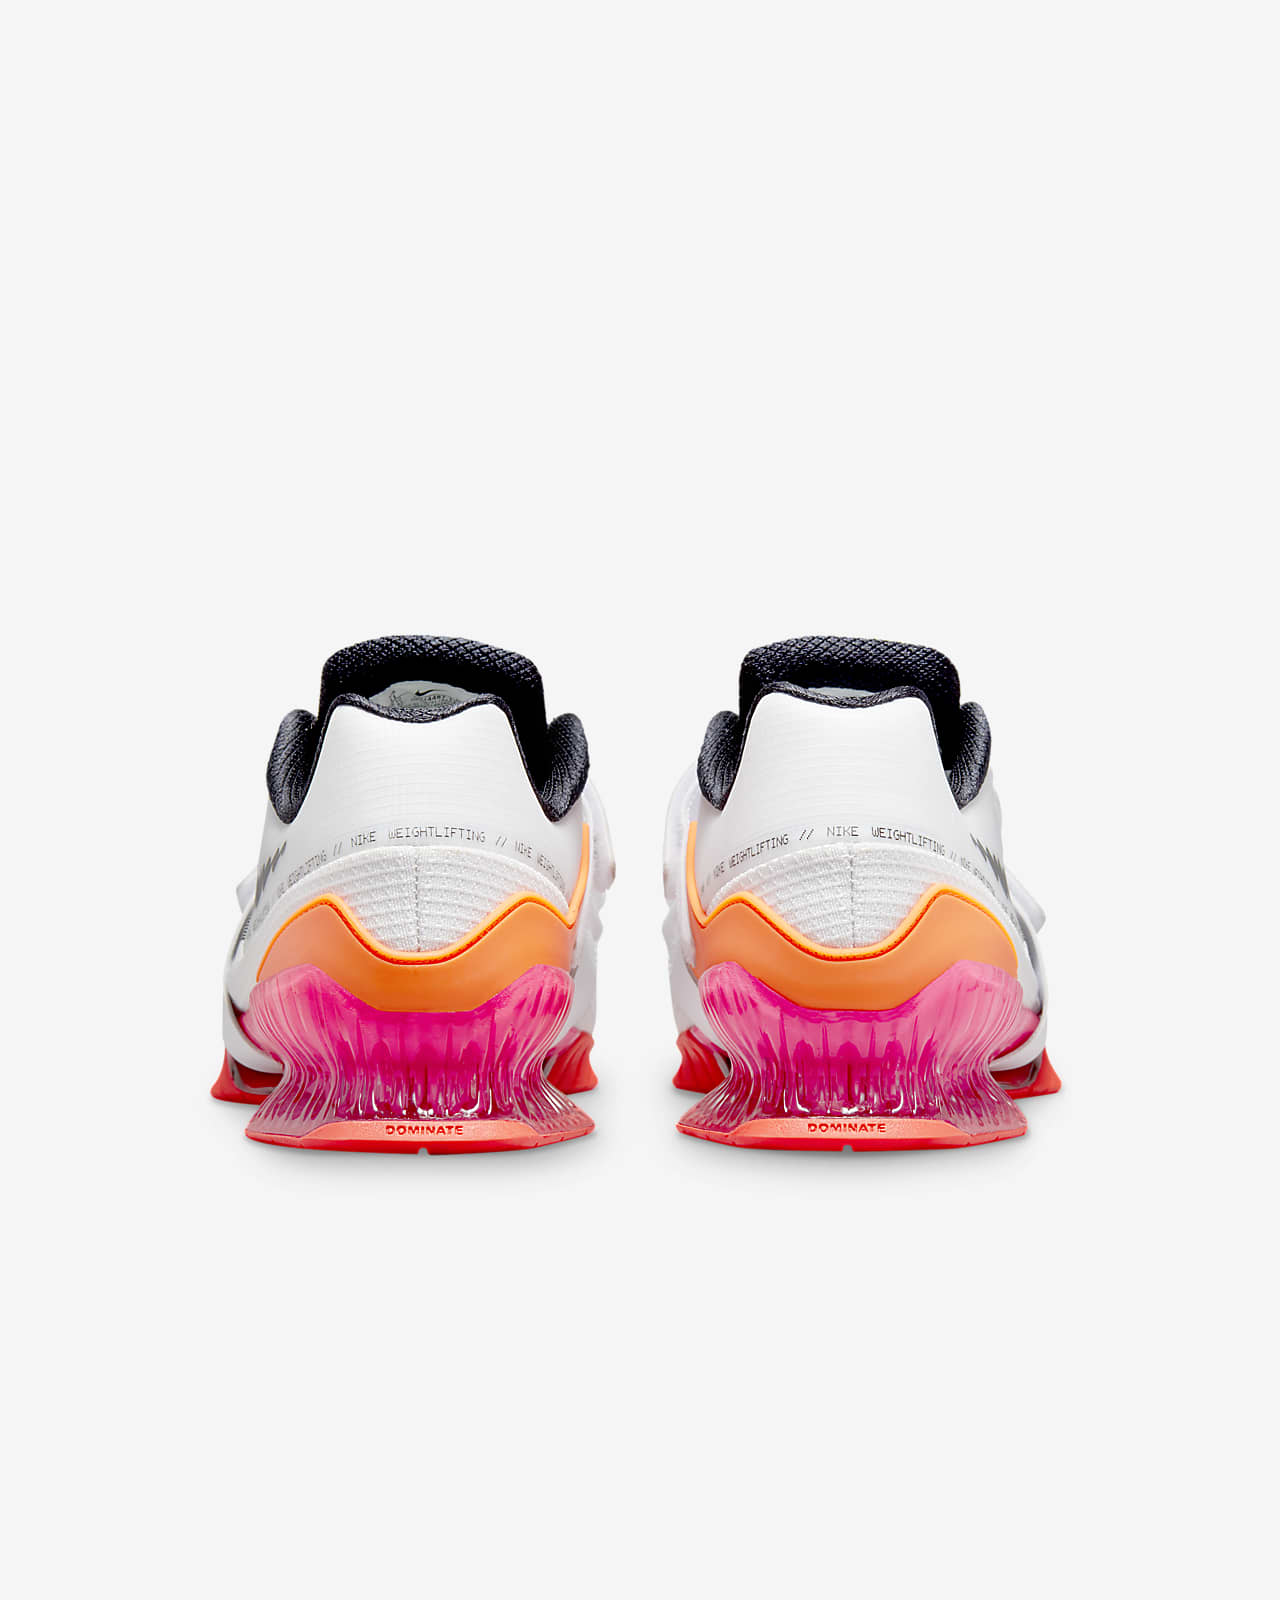 Nike Romaleos 4 SE Weightlifting Shoe